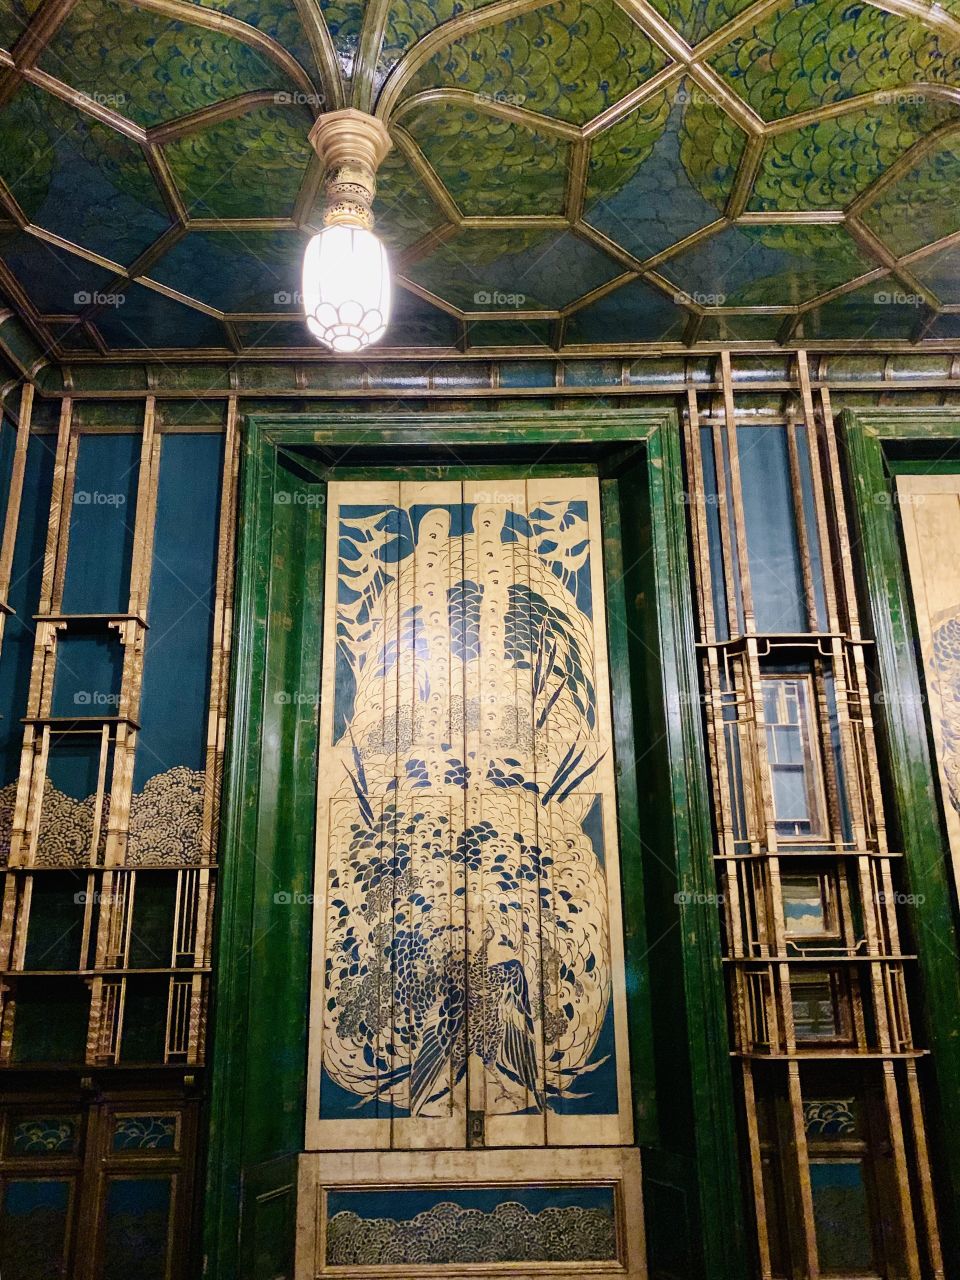 Peacock Room, Freer Gallery